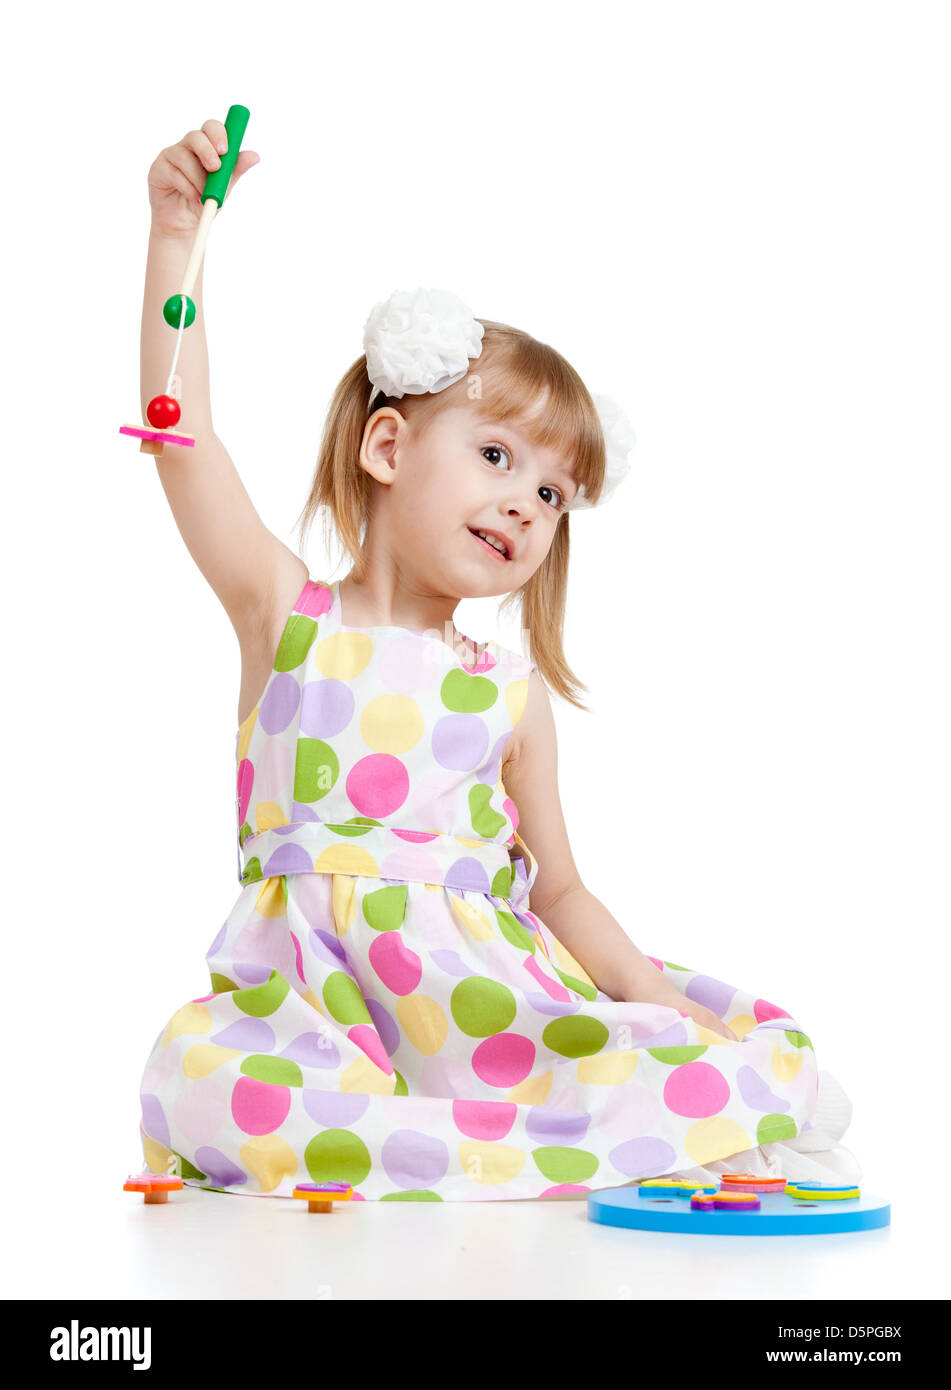 Lustige Kinder Mädchen spielen mit Spielzeug, isoliert auf weiß Stockfoto